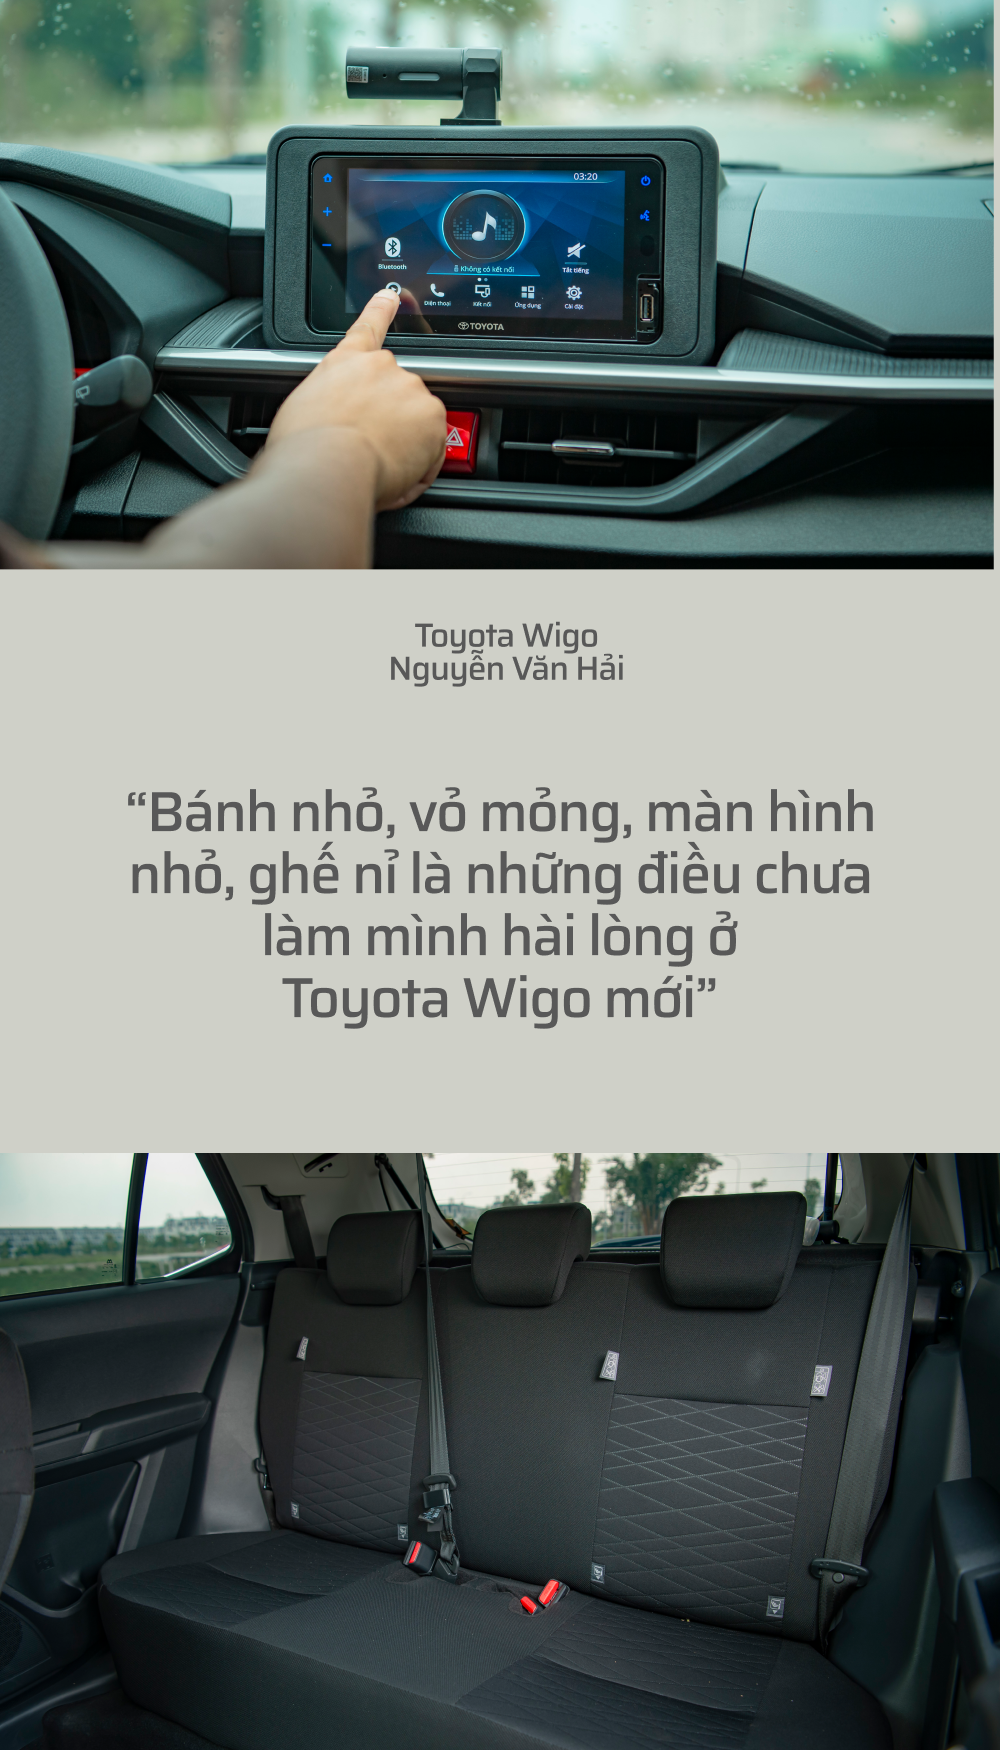 ‘Toyota Wigo không phải xe hạng A tốt nhất, có nhược điểm nhưng vẫn mua vì an tâm’ - Ảnh 4.